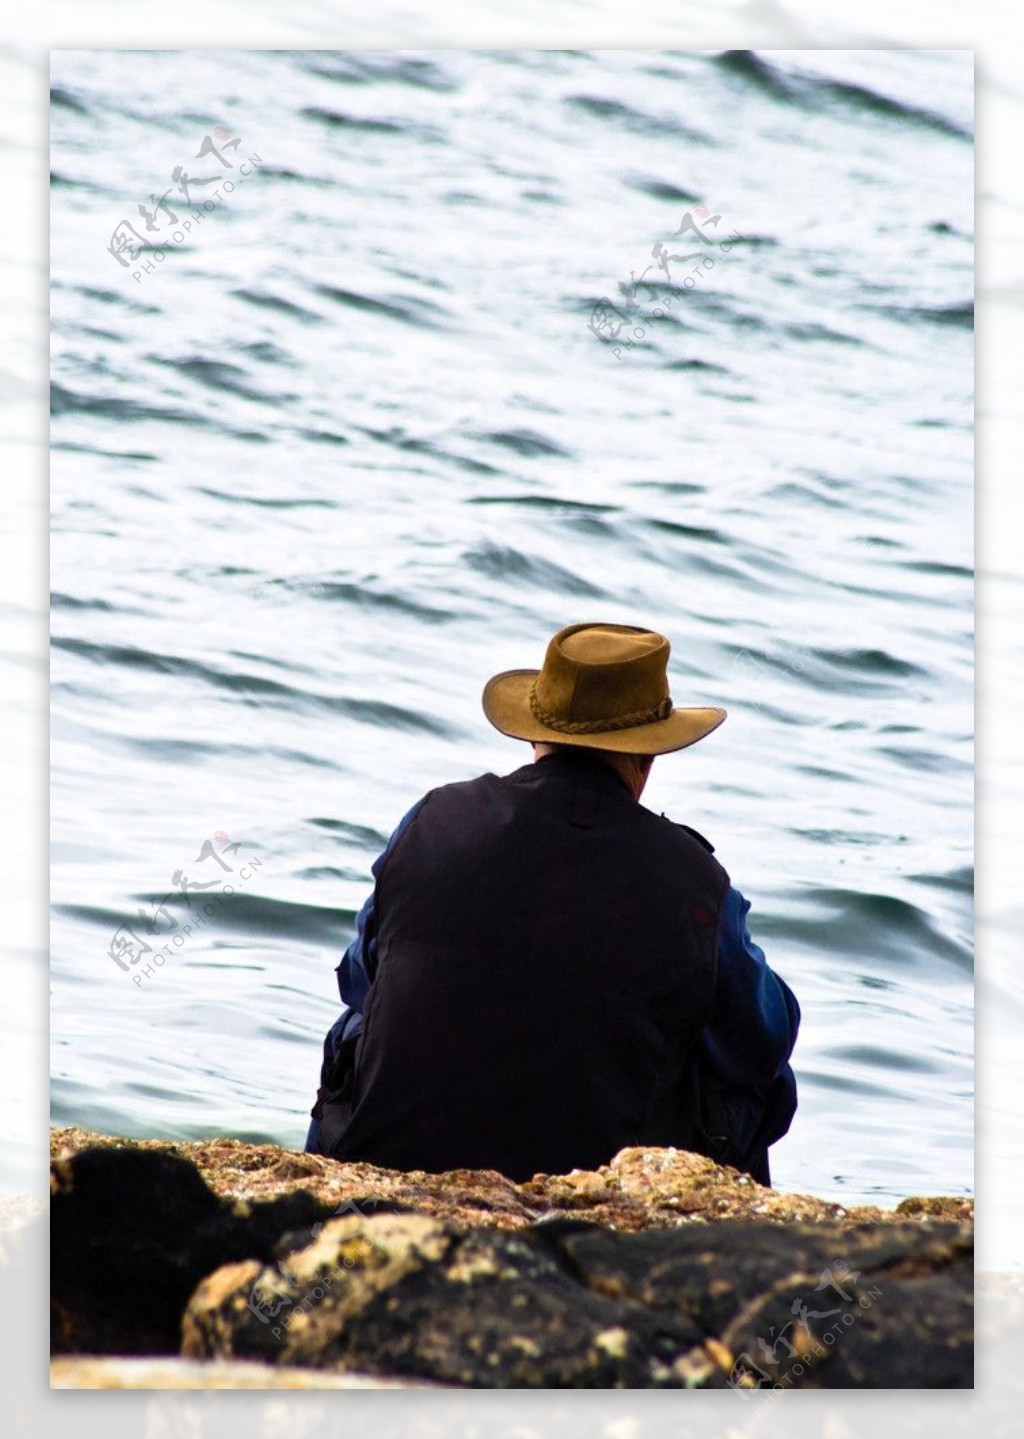 河边钓鱼休闲的男人图片